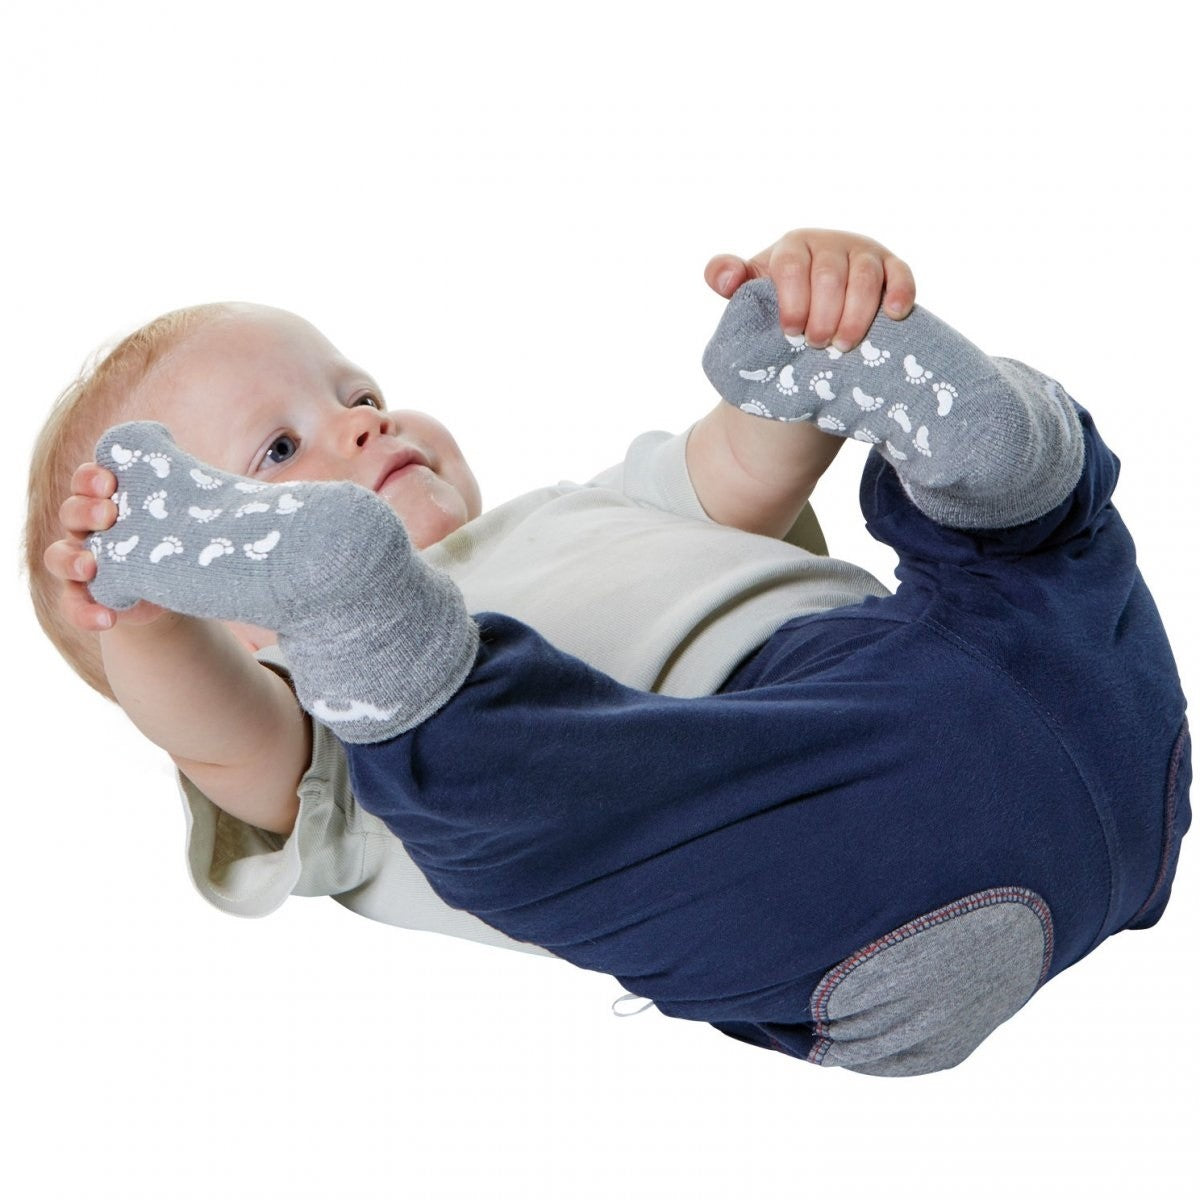 Calzini antiscivolo per bambini: quando usarli e perché